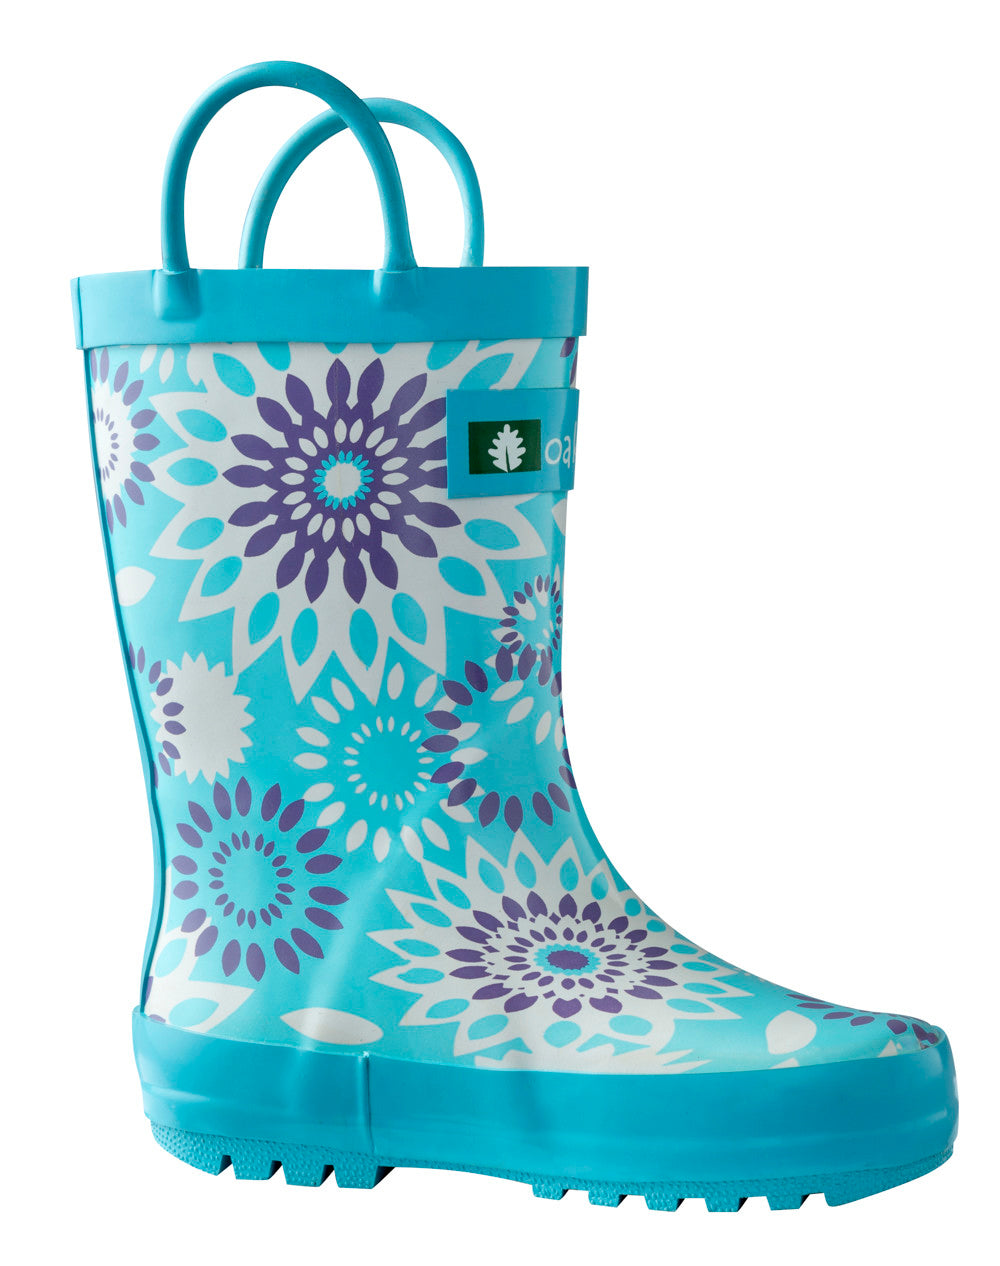 Rubber Rain Boots, Frozen Bursts – OAKI